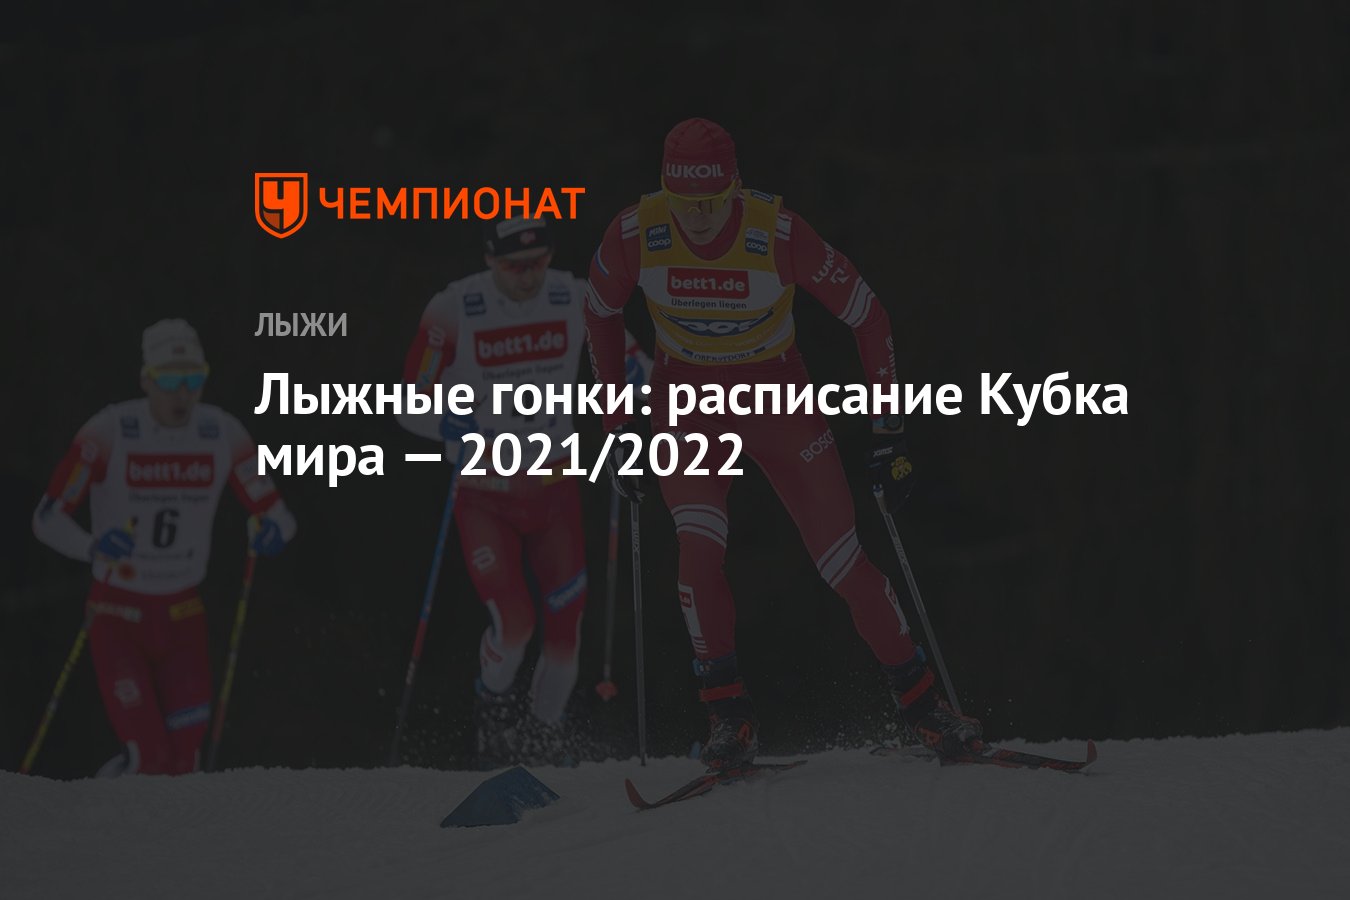 Кубок россии по лыжным гонкам расписание трансляций